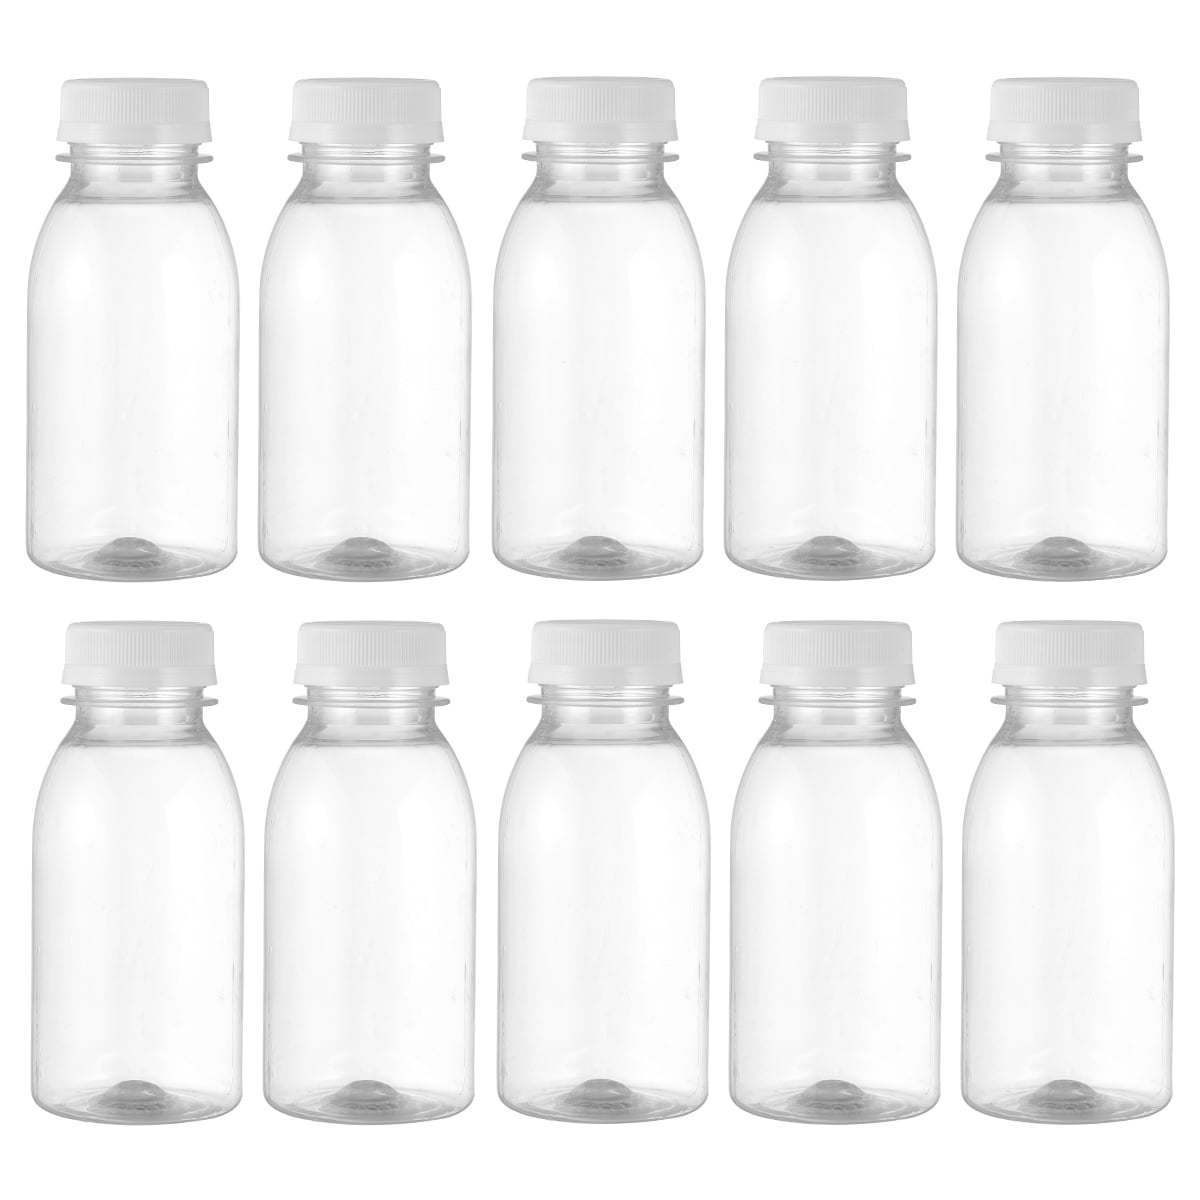 12pcs 4oz Plastic Juice Bottles with Lids,Juice containers,Empty Mini  Bottles for Mini Fridge Reusab…See more 12pcs 4oz Plastic Juice Bottles  with